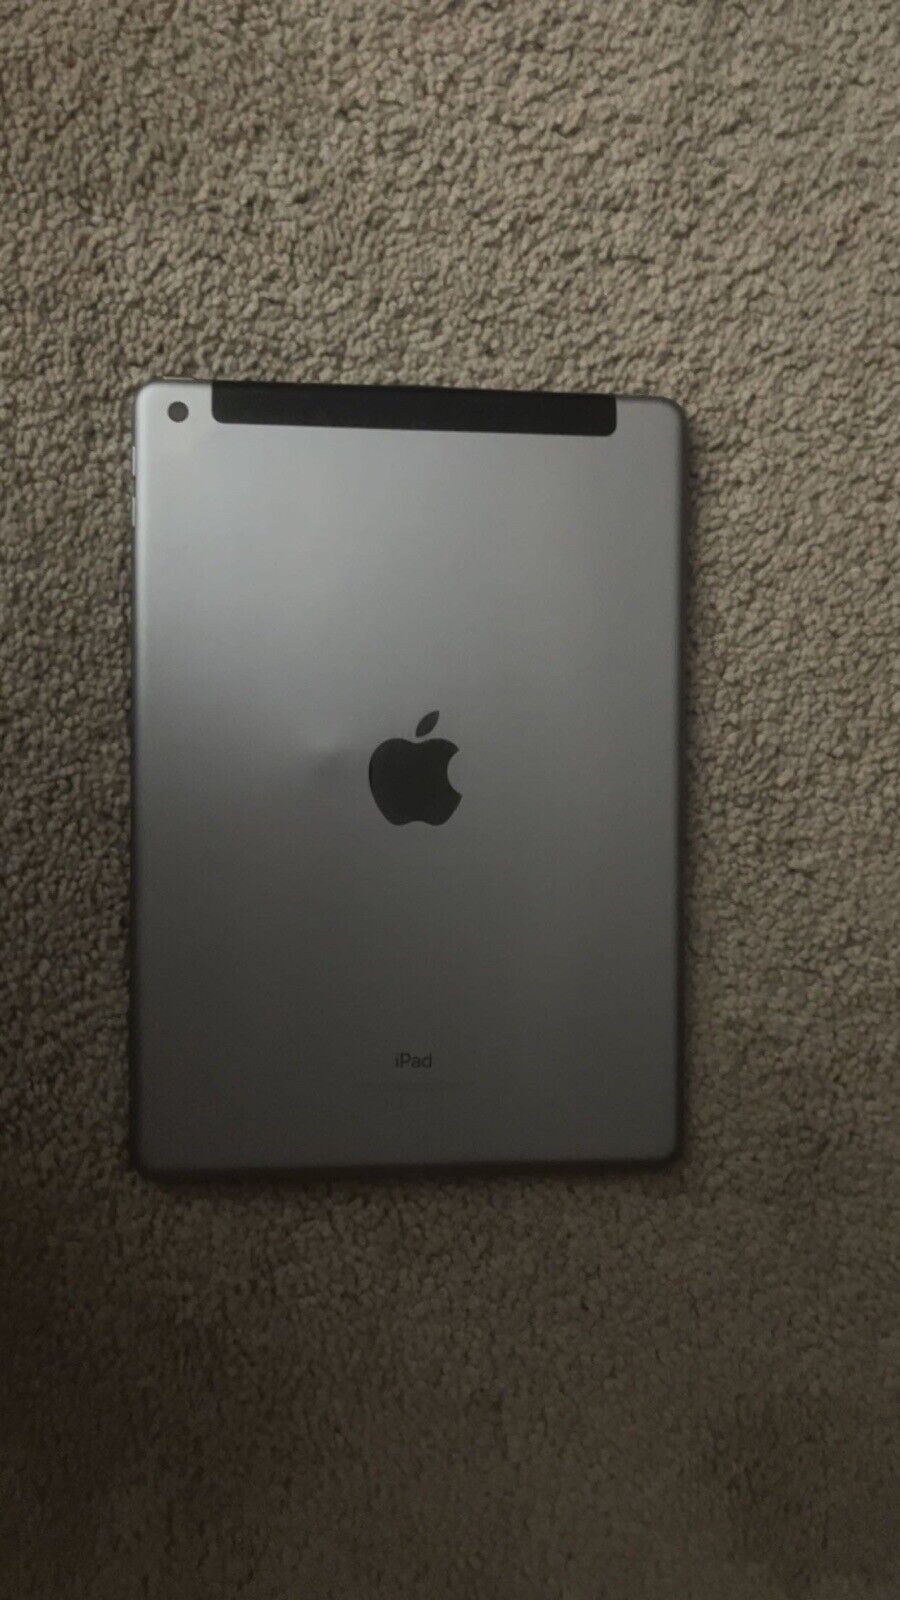 Apple Ipad 6th Gen. 128GB, wifi cellular (unlocked), 9.7in - Space gray